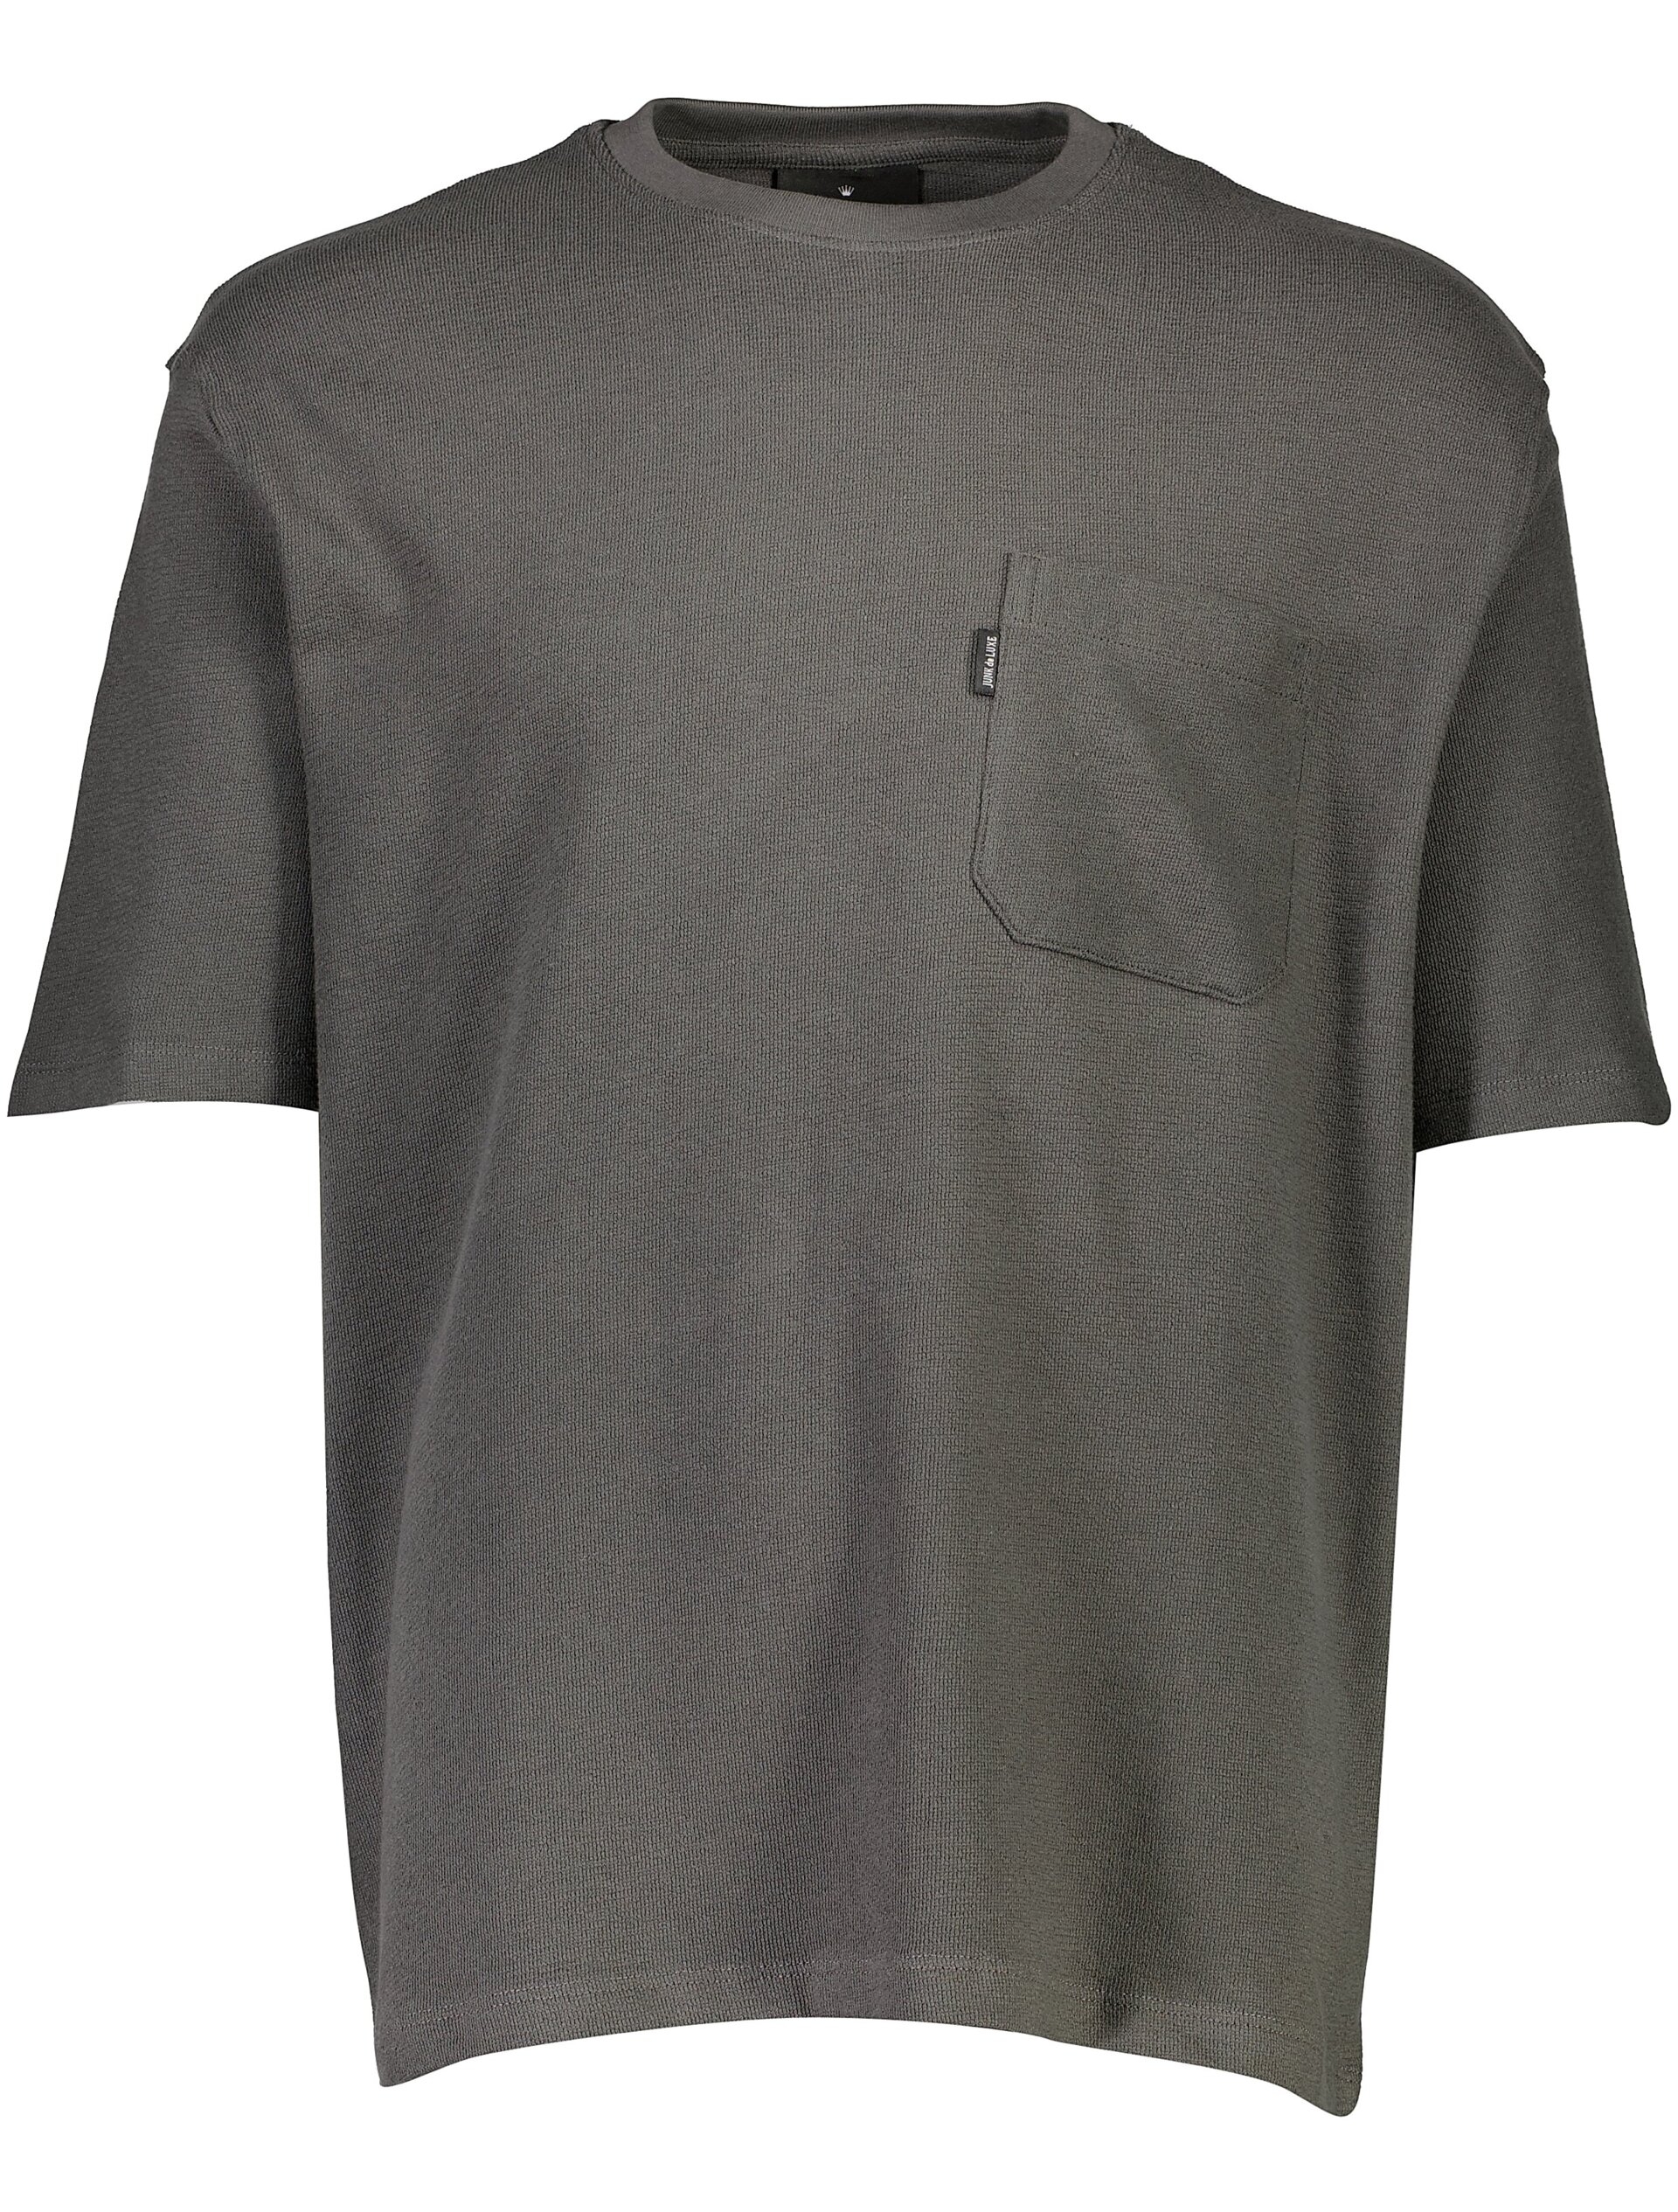 Junk de Luxe T-shirt grå / charcoal